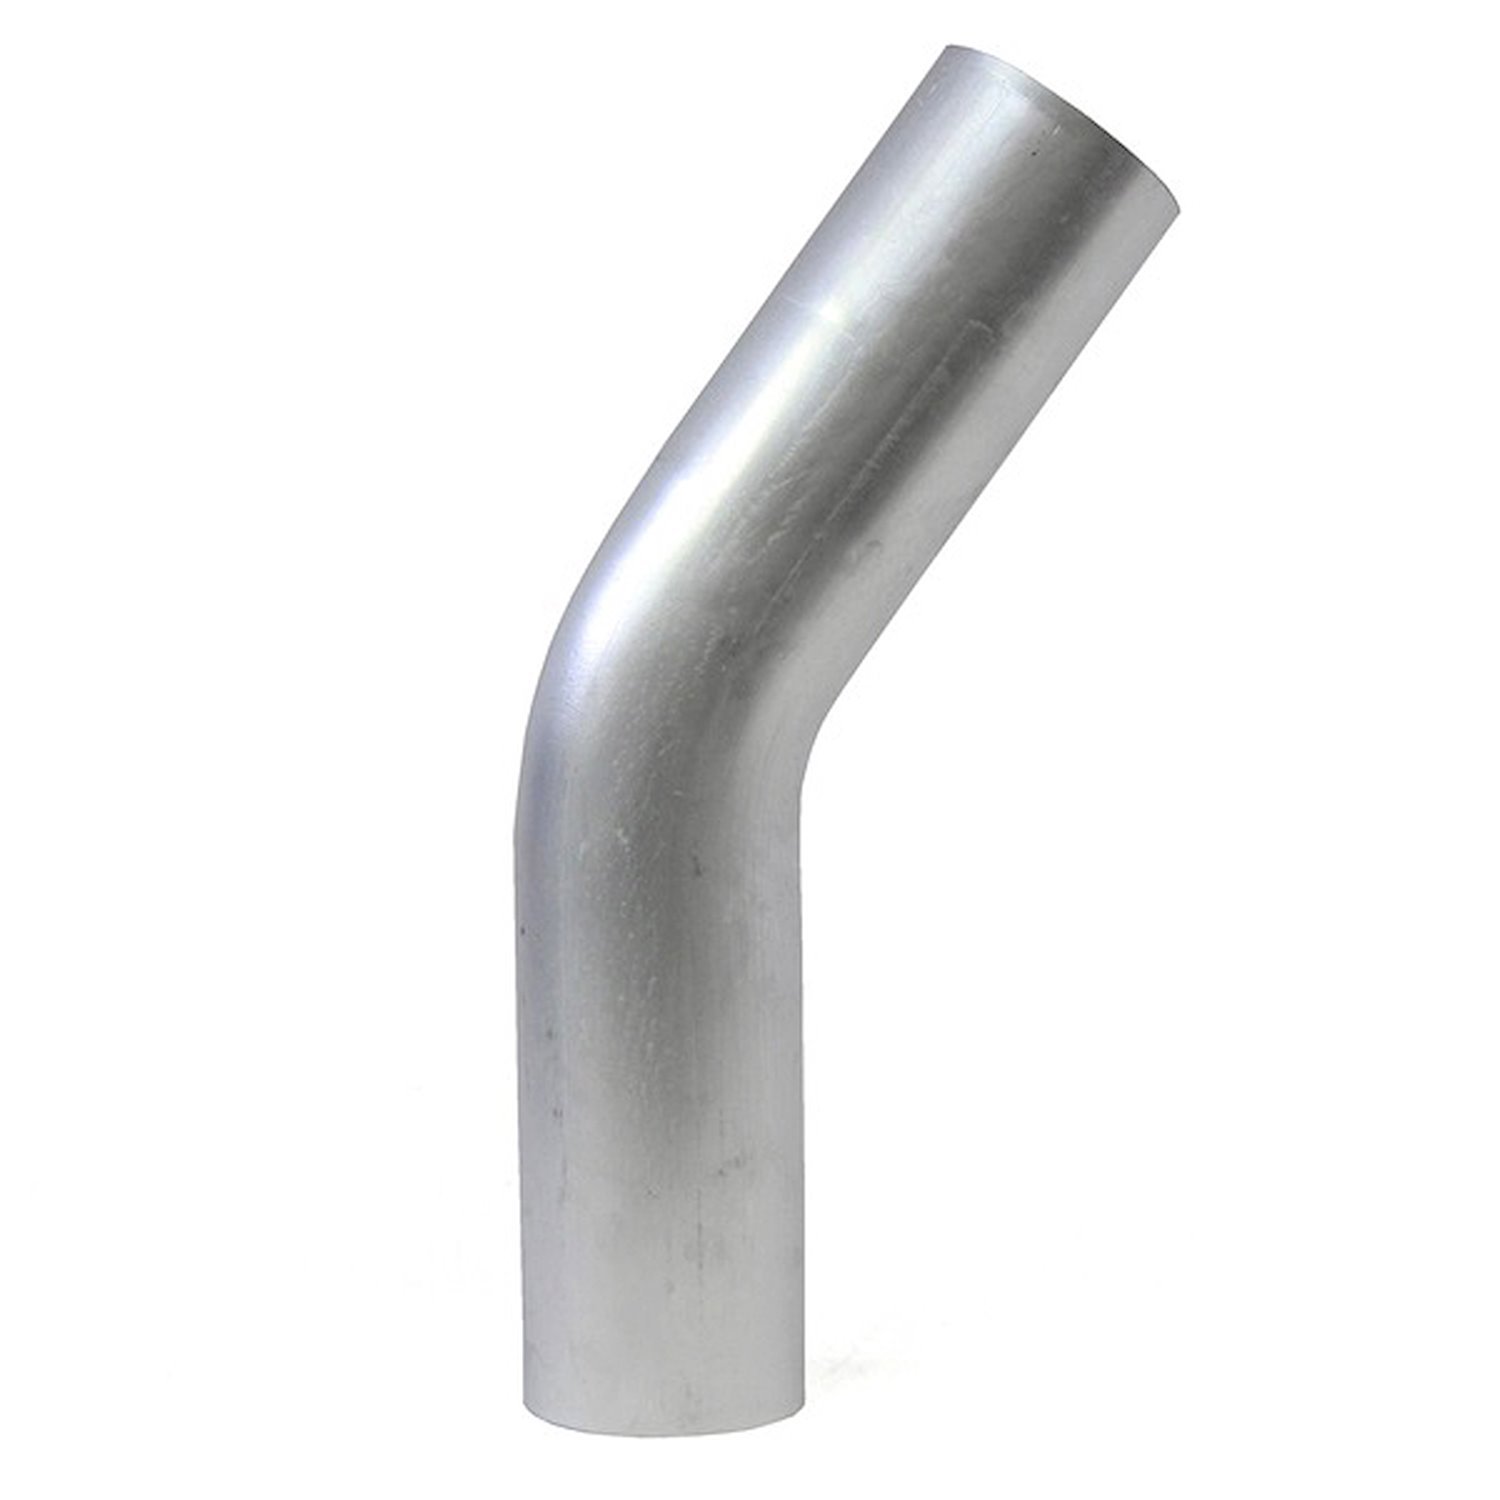 AT35-225-CLR-225 Aluminum Elbow Tube, 6061 Aluminum, 35-Degree Bend Elbow Tubing, 2-1/4 in. OD, Large Radius, 2-1/4 in. CLR